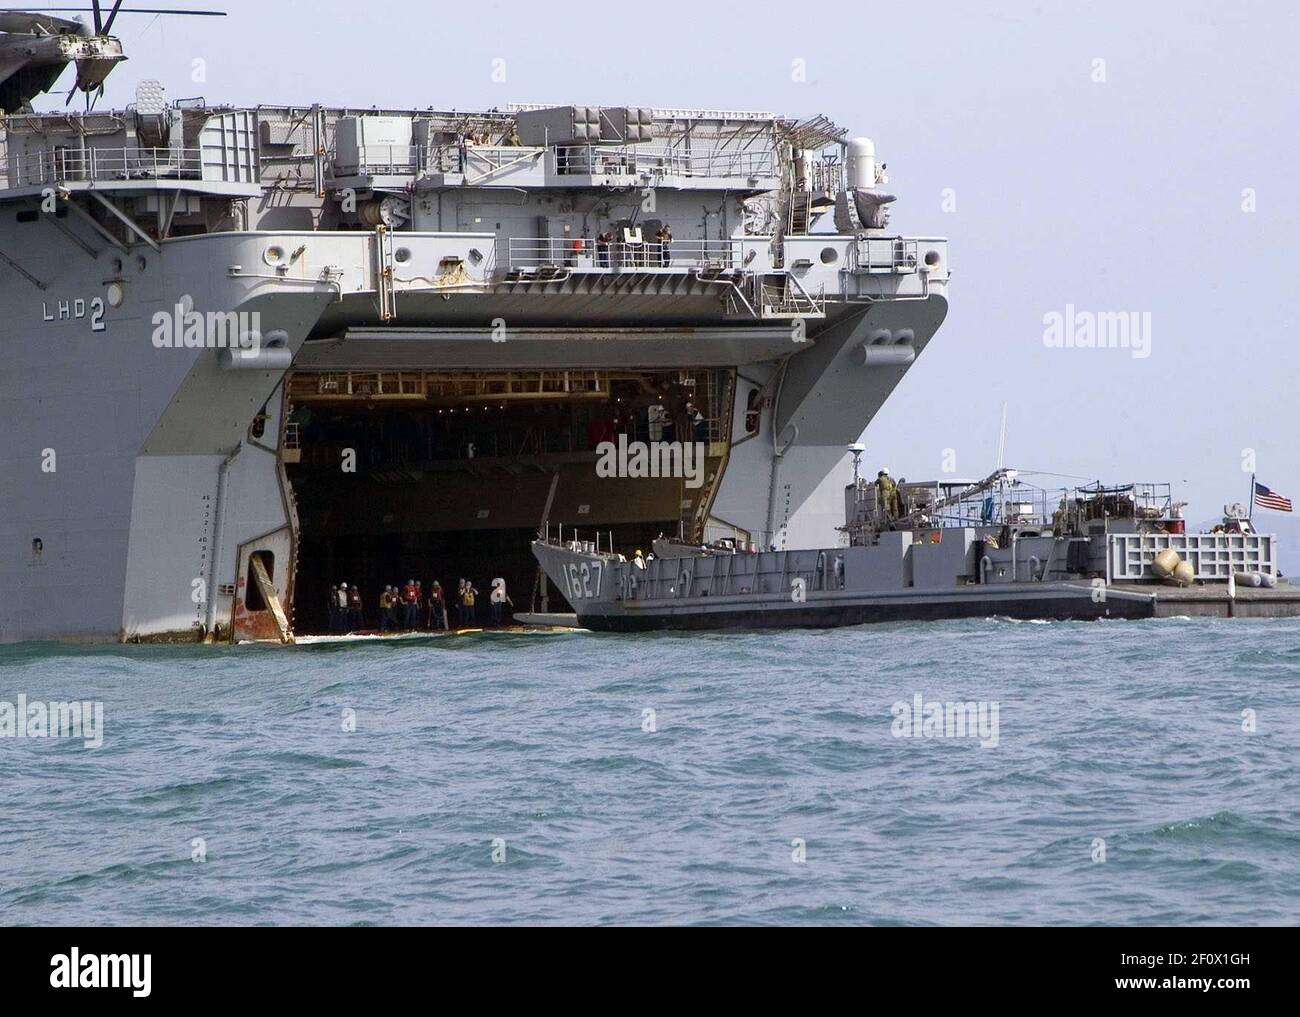 8 de mayo de 2008 - Golfo de Tailandia - Landing Craft Utility (LCU) 1627 sale de la cubierta del pozo del buque de asalto anfibio USS Essex (LHD 2) en el Golfo de Tailandia durante Cobra Gold 2008, Un ejercicio militar conjunto patrocinado por los Estados Unidos y Tailandia, diseñado para mejorar la interoperabilidad entre las fuerzas conjuntas de los Estados Unidos y las fuerzas combinadas de los militares tailandeses, singapurenses, japoneses e indonesios. Crédito de la foto: Kari R. Bergman/EE.UU. Navy/Sipa Press/0805082216 Foto de stock